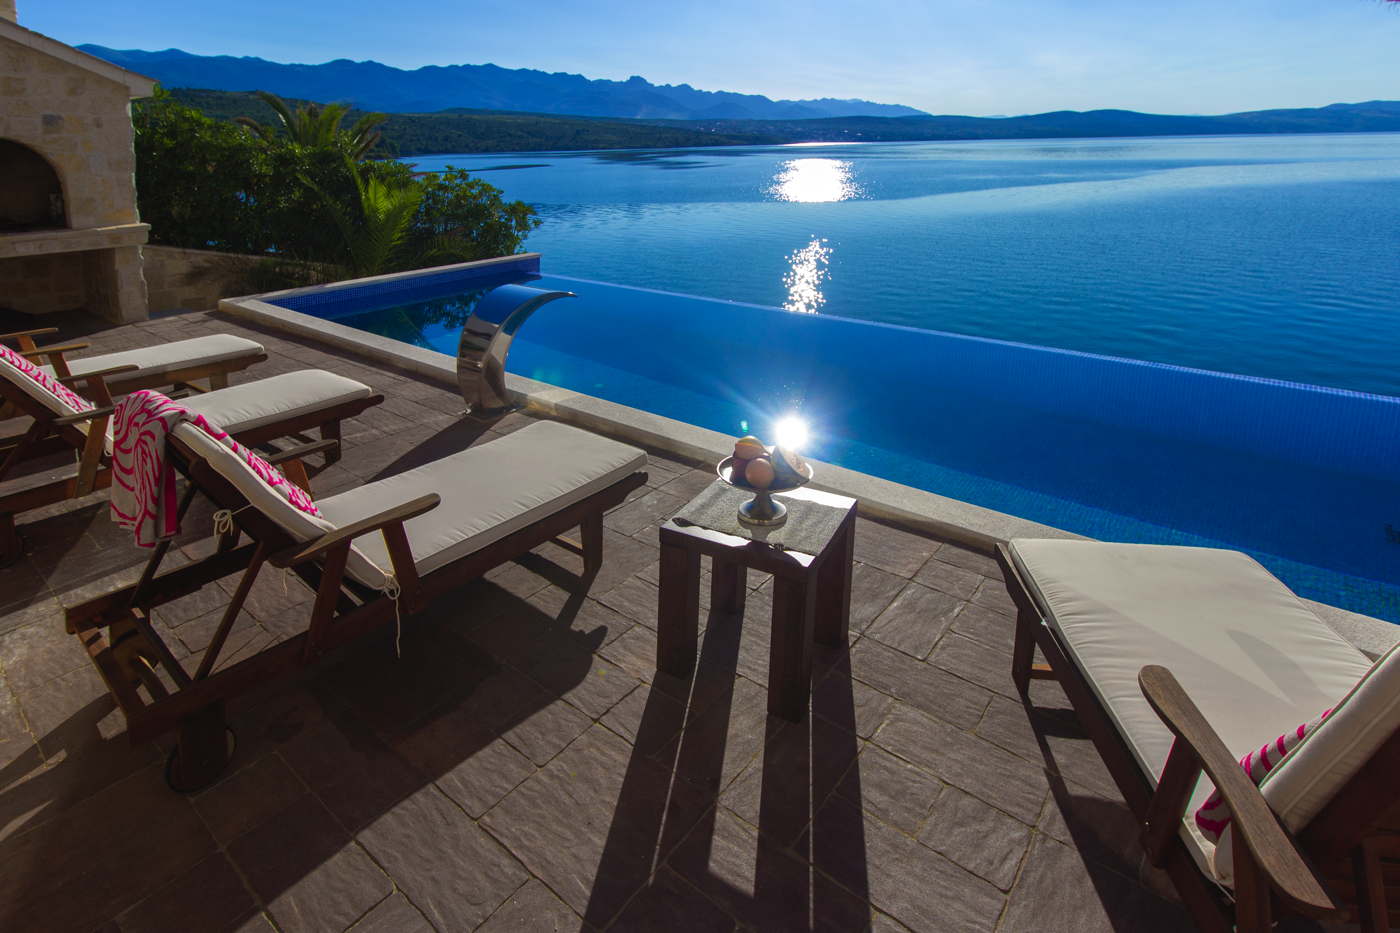 Luxusvilla in Kroatien mit privatem Strand, Pool und Service direkt am Meer  